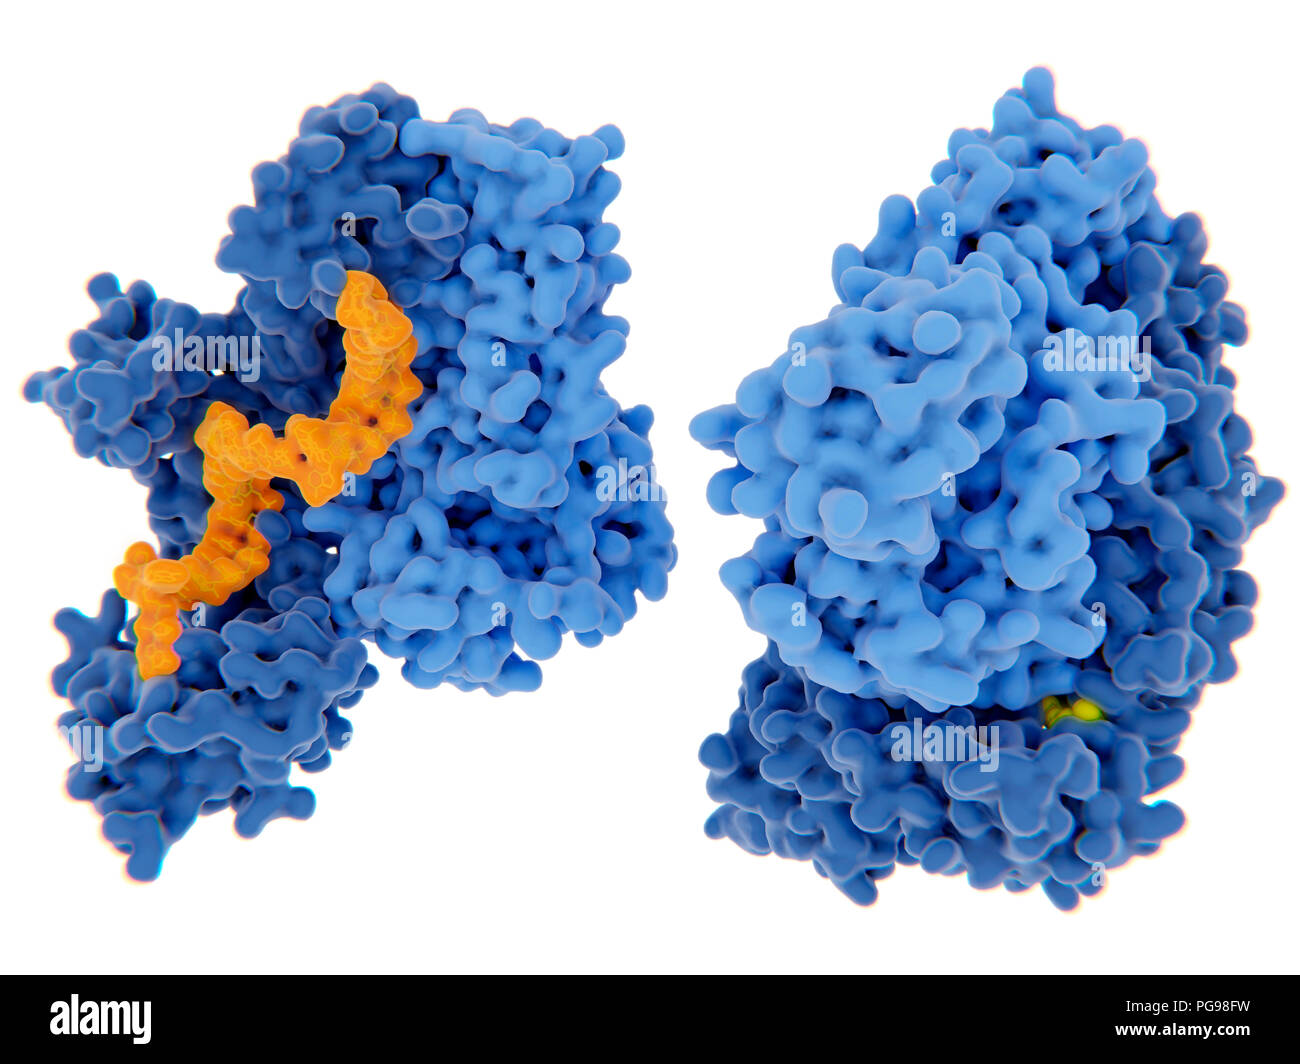 Die reverse Transkriptase von HIV-1-Hemmung, Illustration. Das human immunodeficiency virus Einzelstrang-RNA-Genom in Doppel umgewandelt wird Doppelstrang-DNA, die von der viralen reversen Transkriptase (blau) und dann die DNA in die DNA der infizierten menschlichen Zelle integriert ist. Die reverse Transkriptase ist eines der wichtigsten Ziele der Virus Vermehrung durch einen Inhibitor zu stören. Es gibt Nukleosid und Nukleotid-hemmer, nicht-nukleosidische Hemmer. Zwei Beispiele für diese Inhibitoren (gelb) dargestellt Bindung an die reverse Transkriptase. Stockfoto